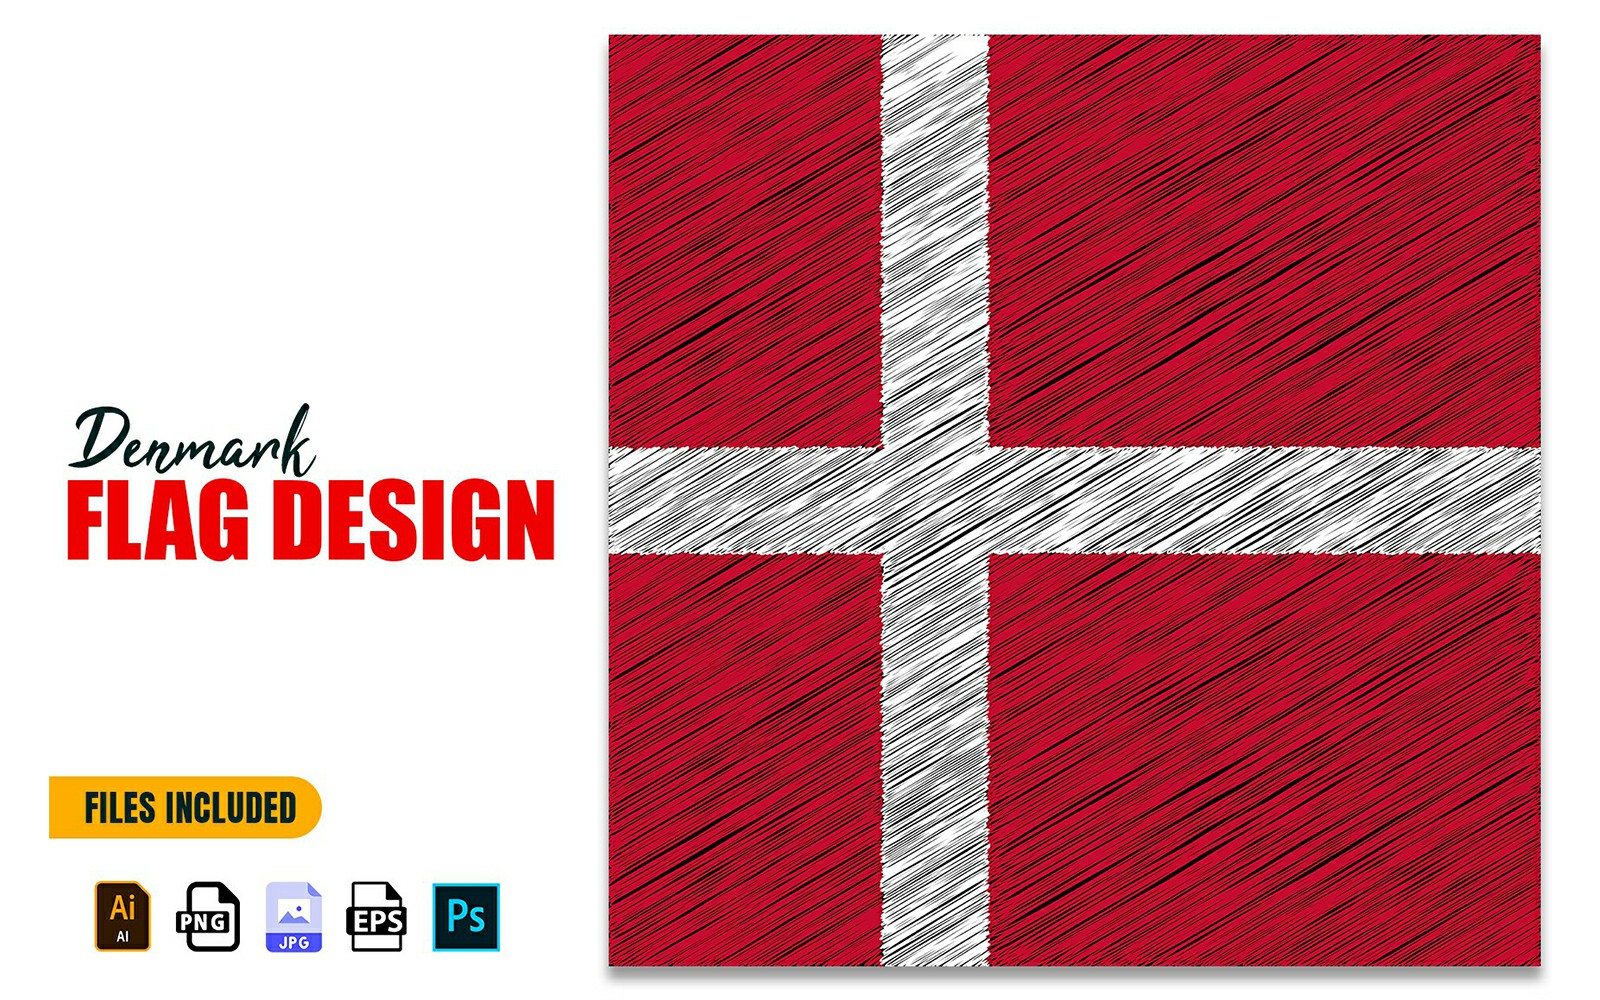 5 June Denmark National Day Flag Design Illustration